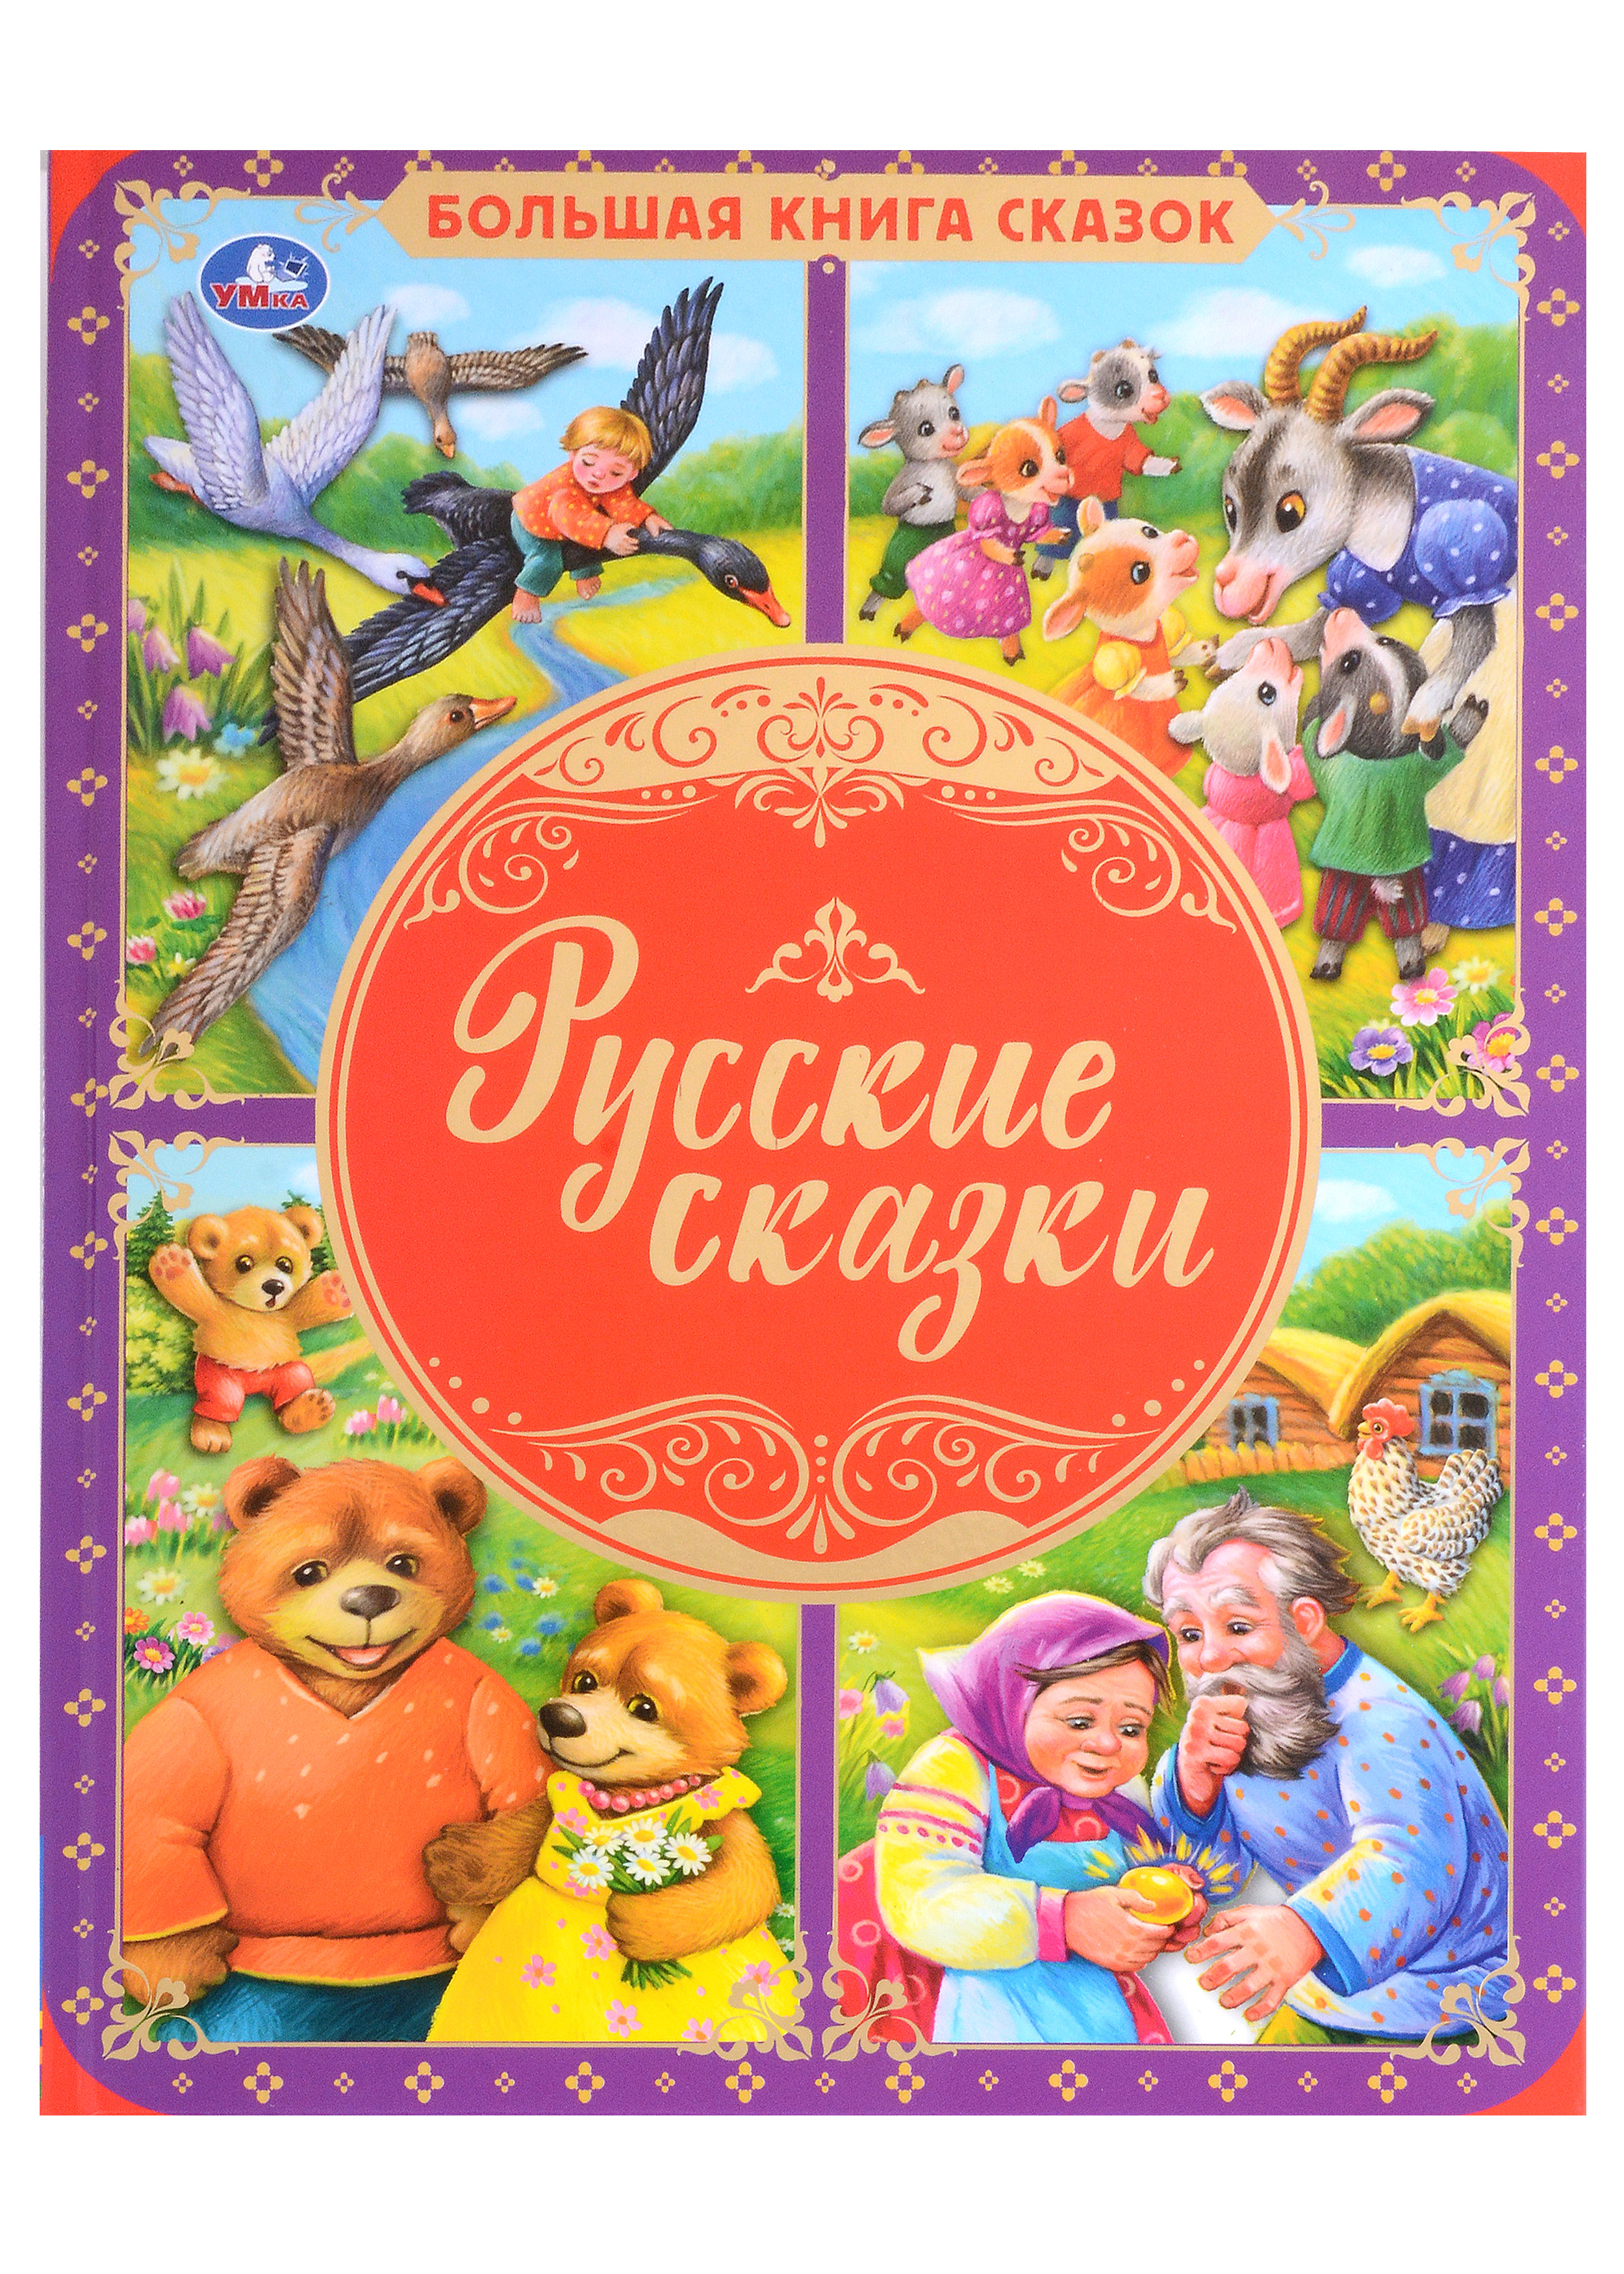 Русские сказки книга седмица трёхглазого акунин б 320 стр